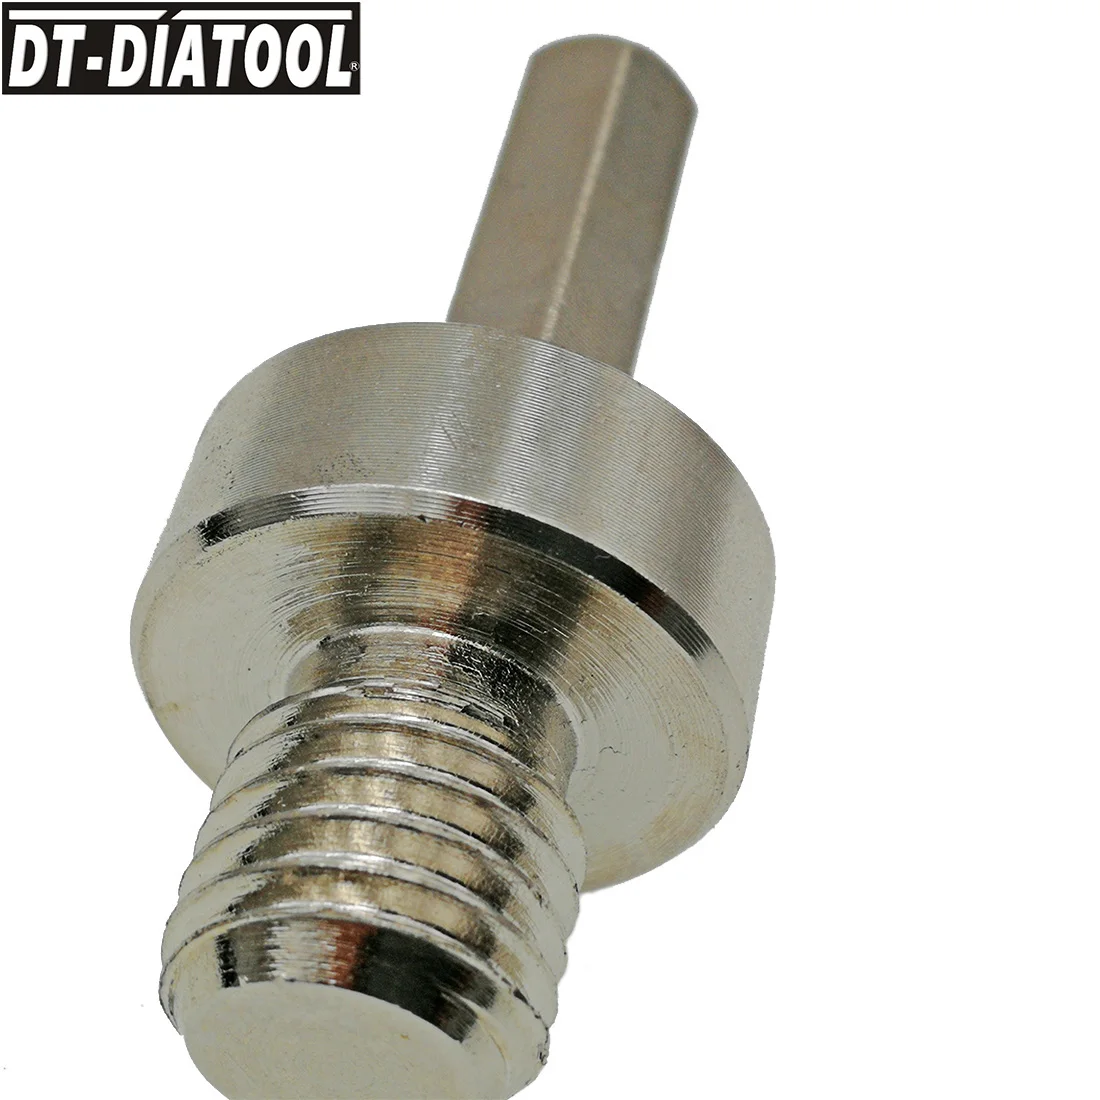 DT-DIATOOL конвертер резьбы для M14 с наружной резьбой на 3/8 шестигранный хвостовик алмазные коронки для ручной дрели или электрической дрели